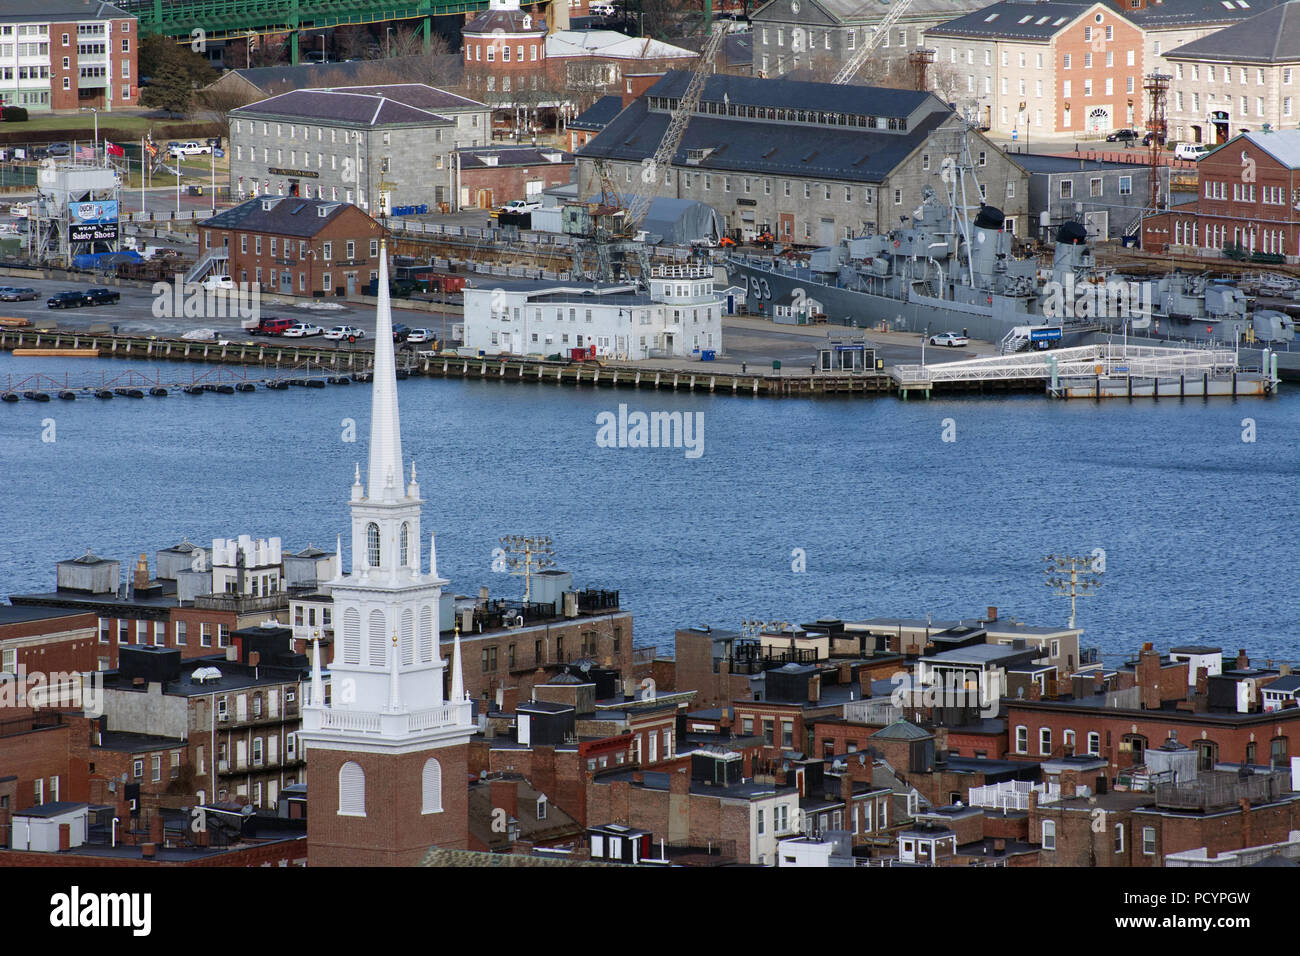 Boston, MA a de nombreux sentiers historiques à suivre pour apprendre les aspects éducatifs de l'histoire. Banque D'Images